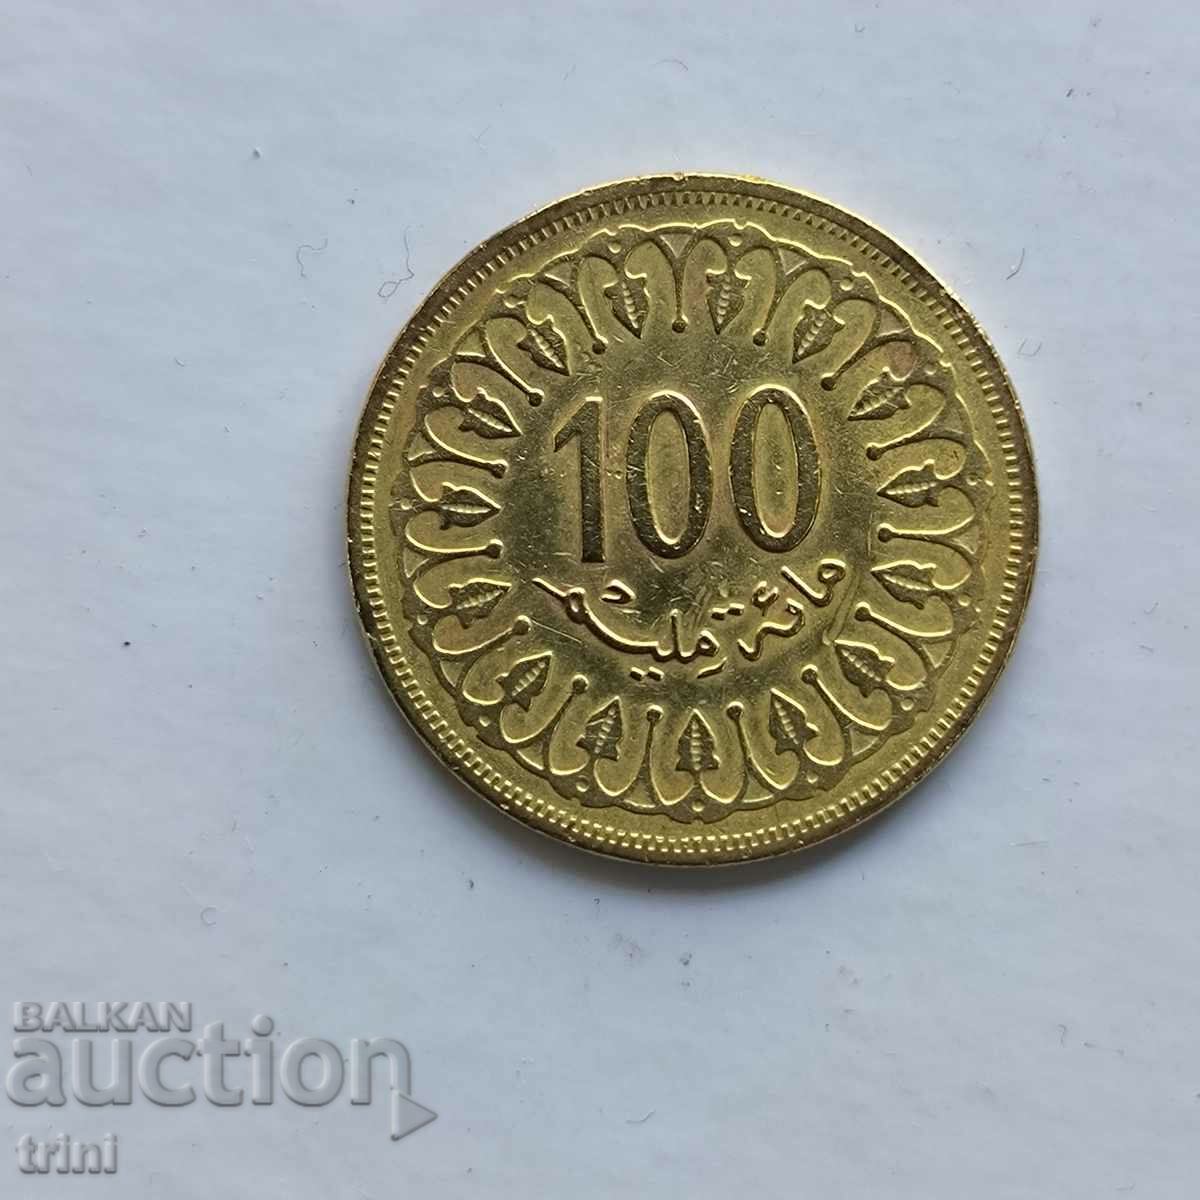 Tunisia 100 millimas 1983